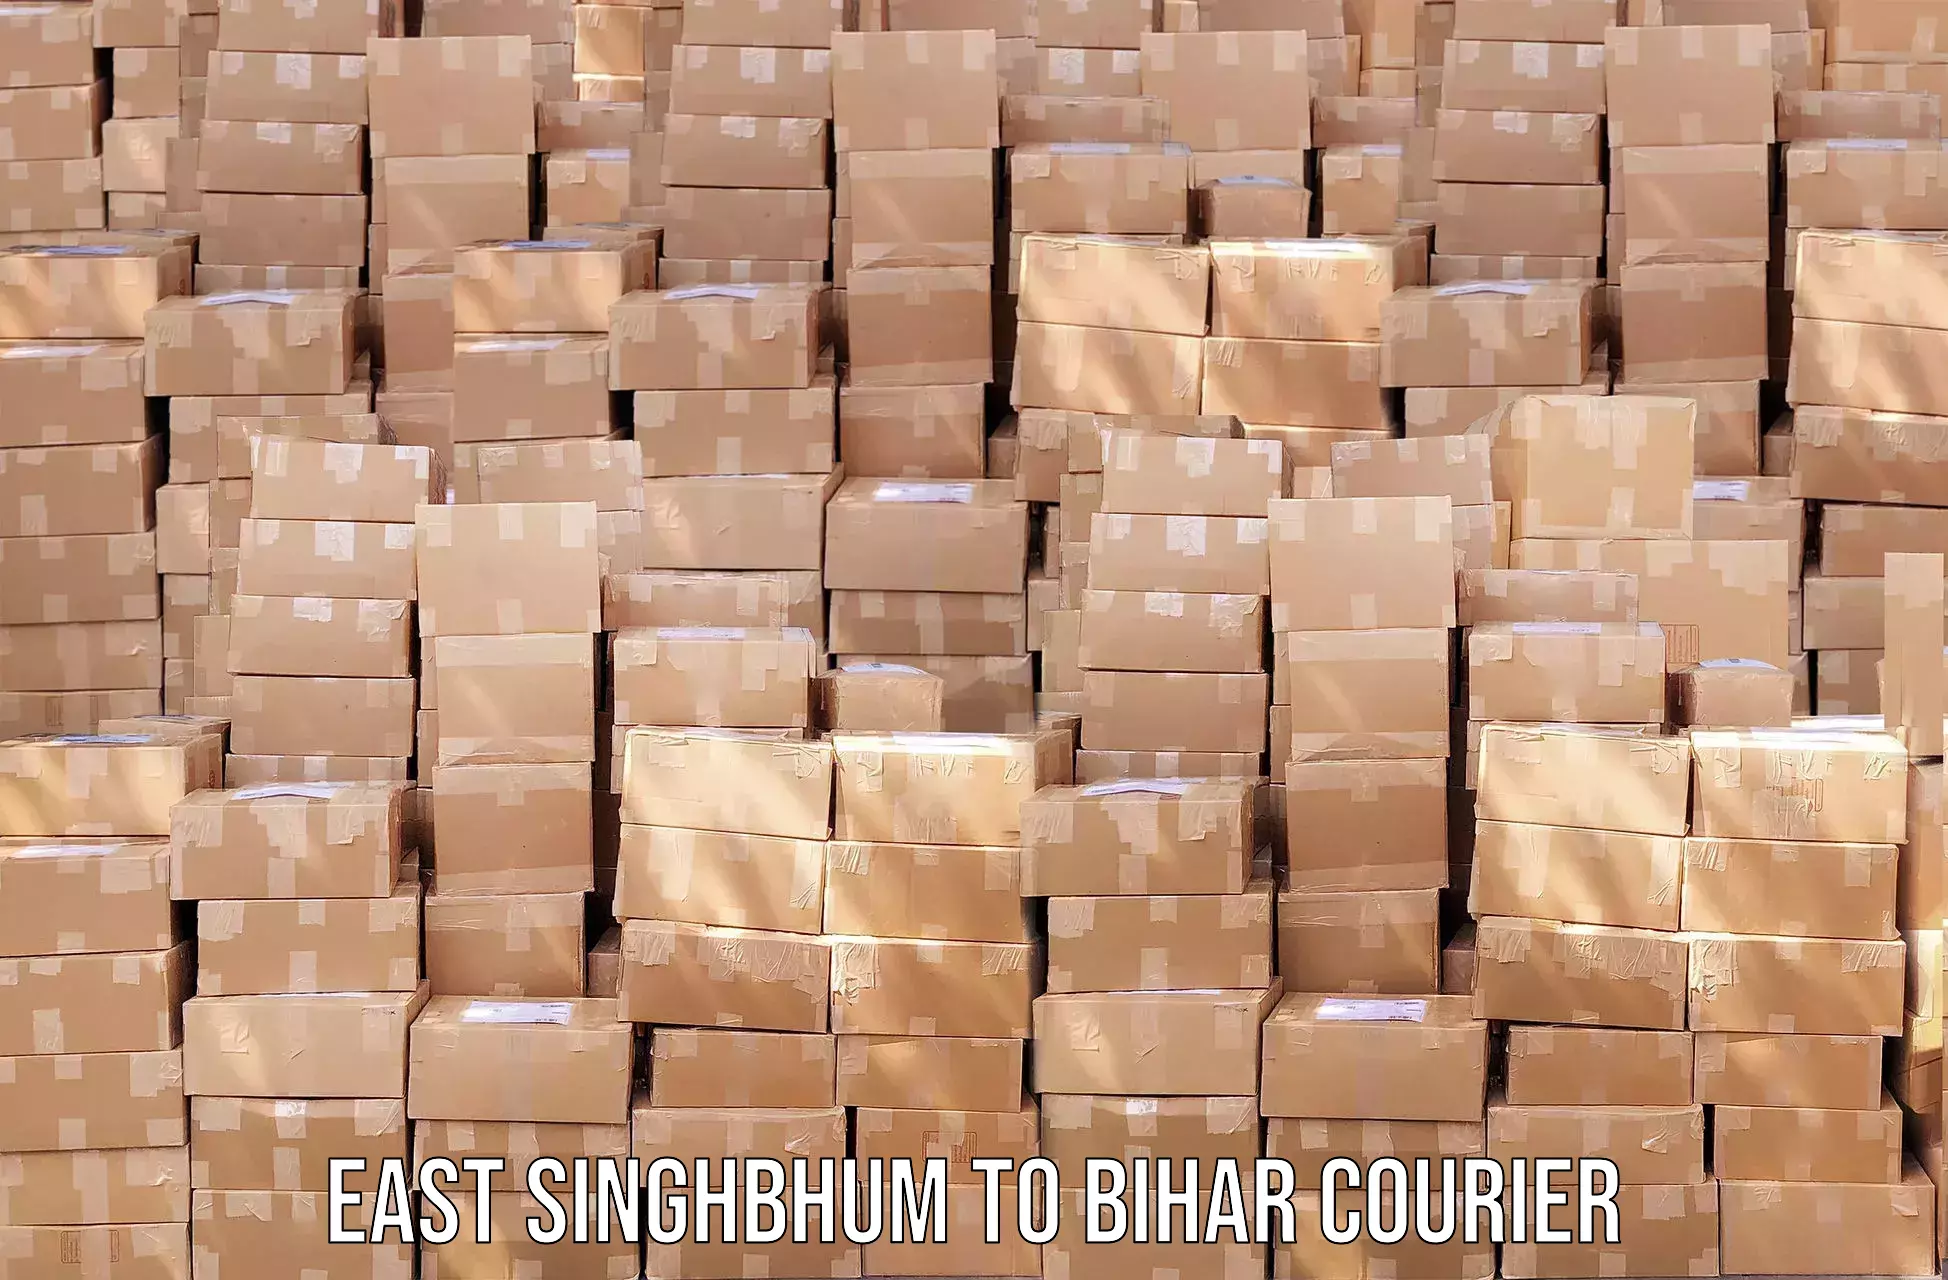 Courier app in East Singhbhum to Bihar